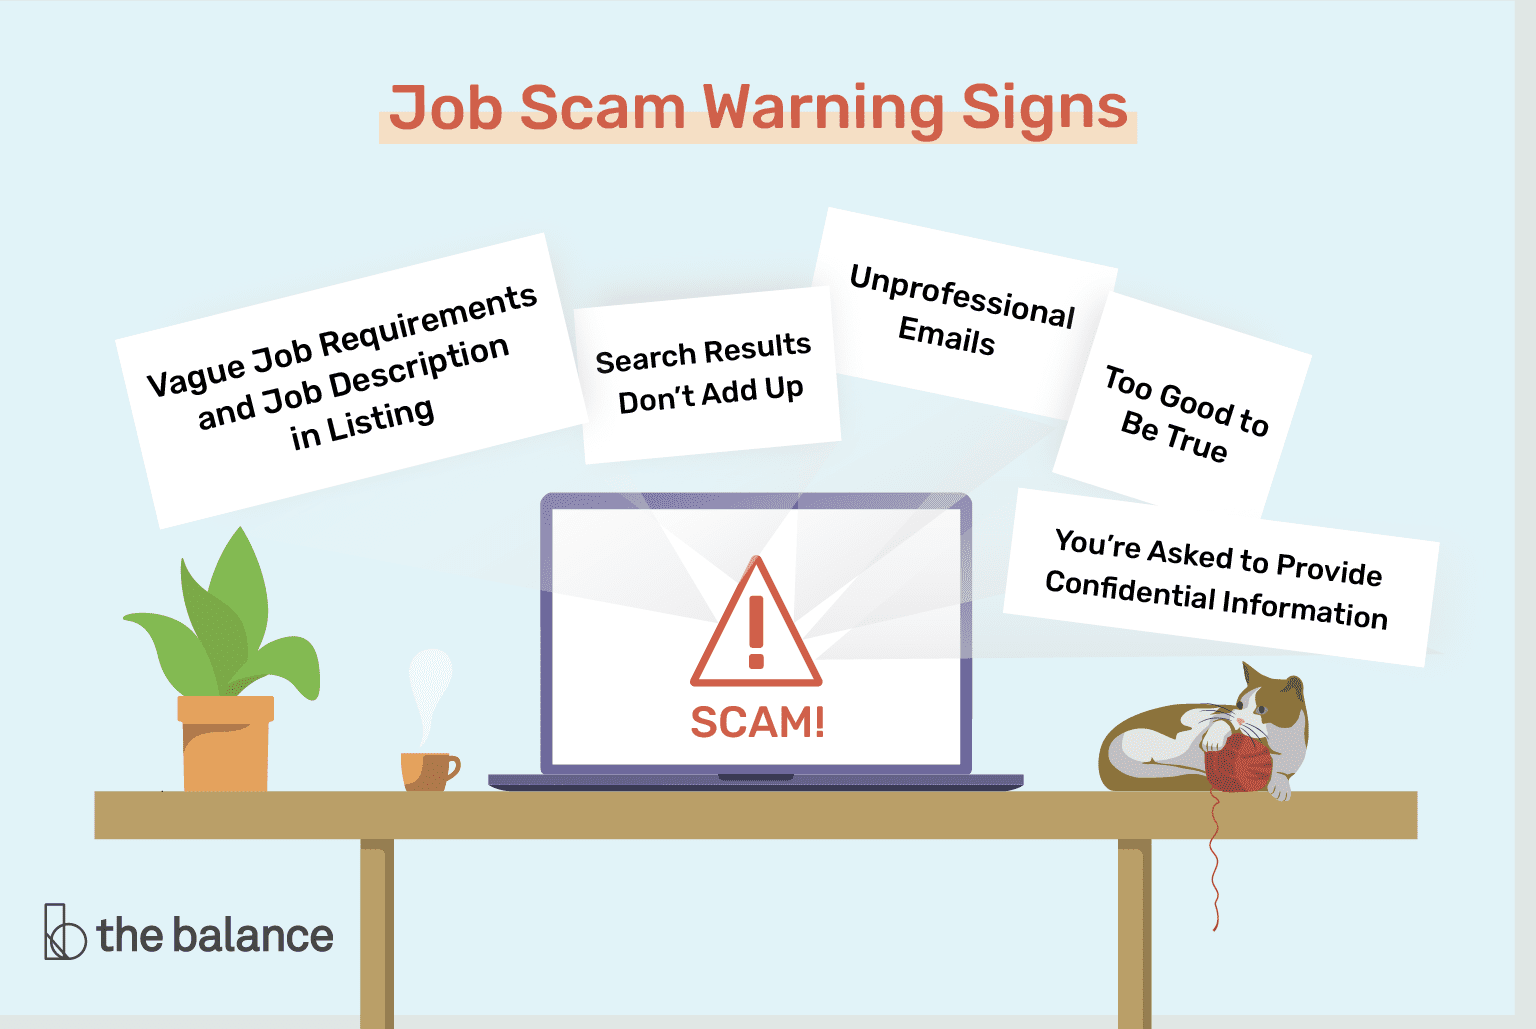 En este momento estás viendo Las 10 principales señales de advertencia de estafas laborales